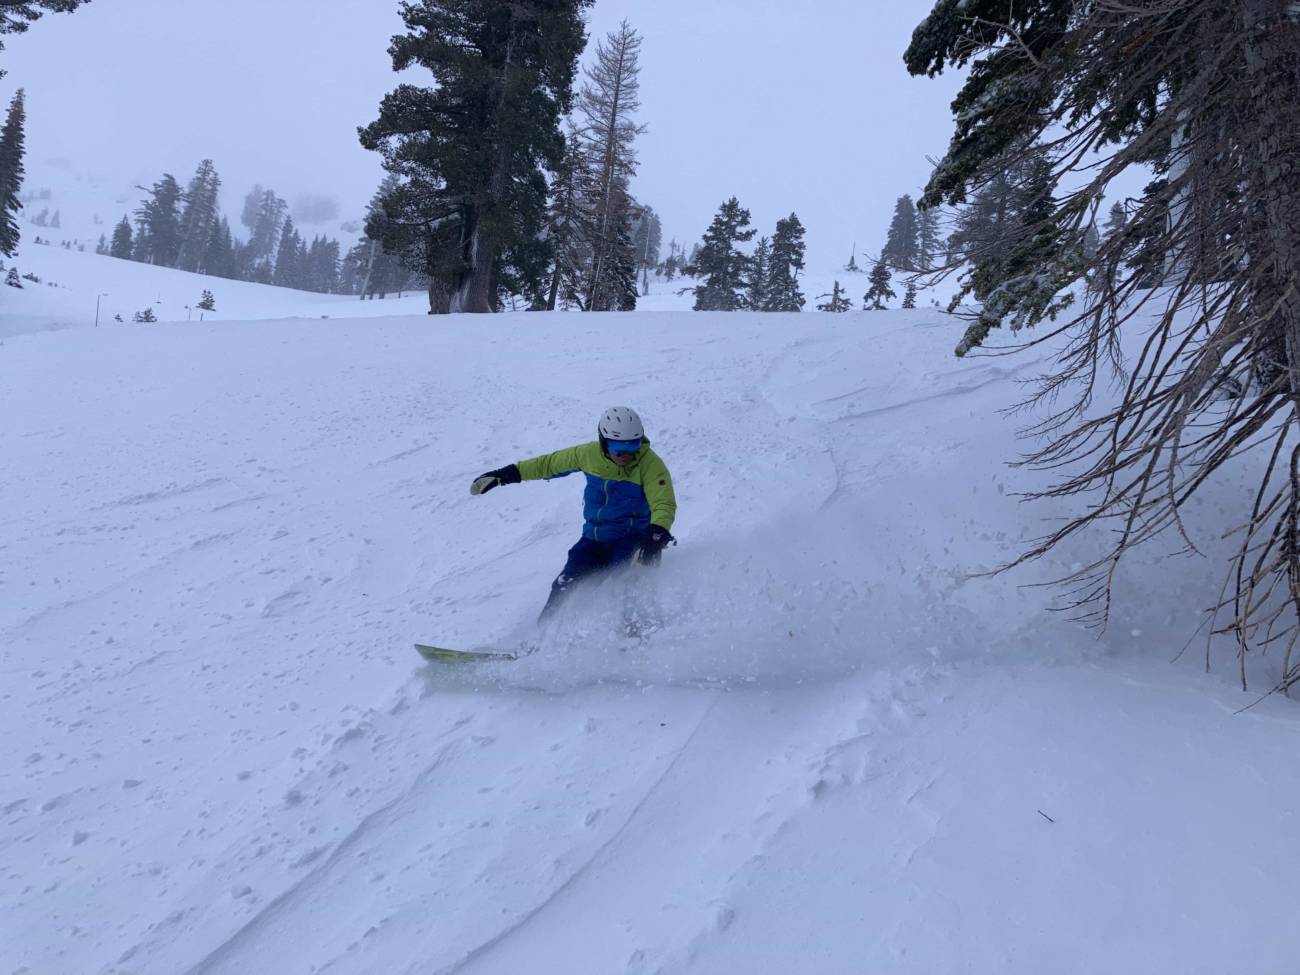 snowboarder in powder at alpine